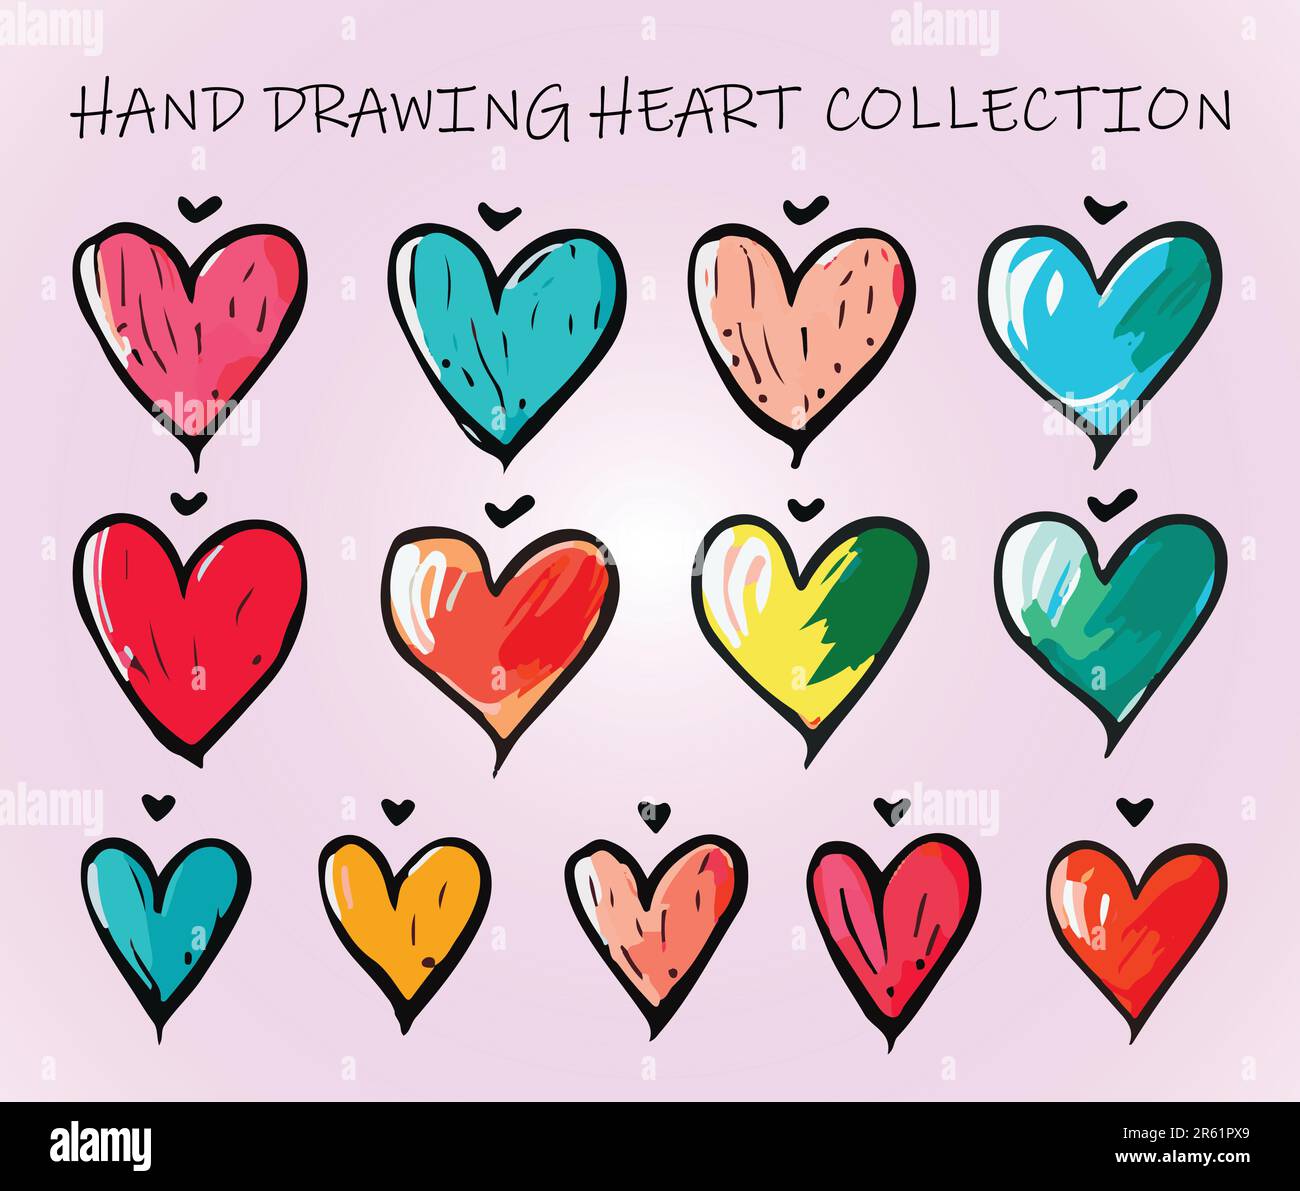 Mano disegno colorful Heart Collection. Illustrazione vettoriale in stile Doodle. Illustrazione Vettoriale